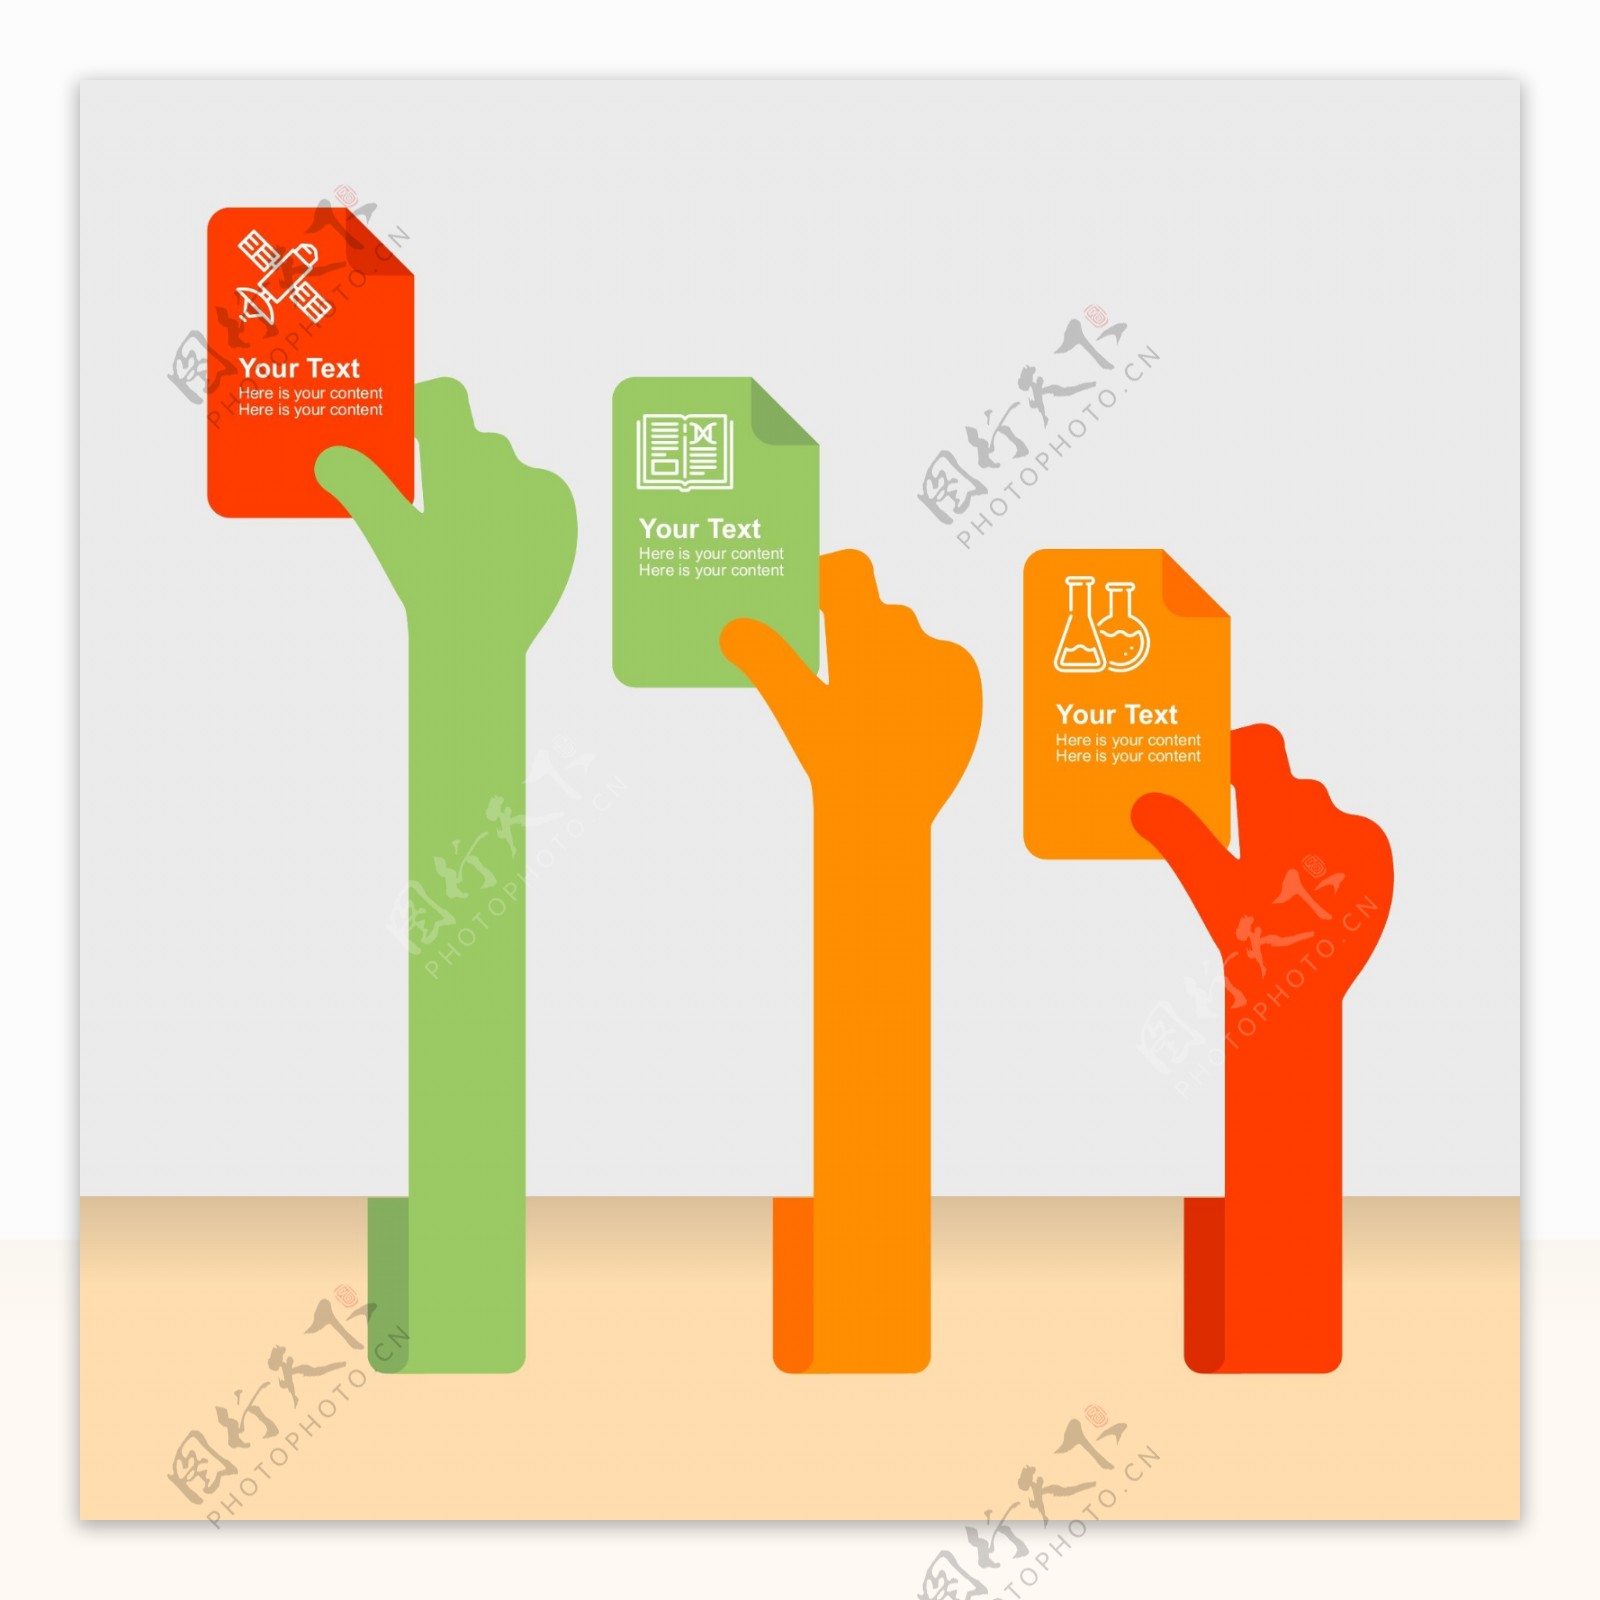 3个彩色举纸的手臂商务信息图矢量素材